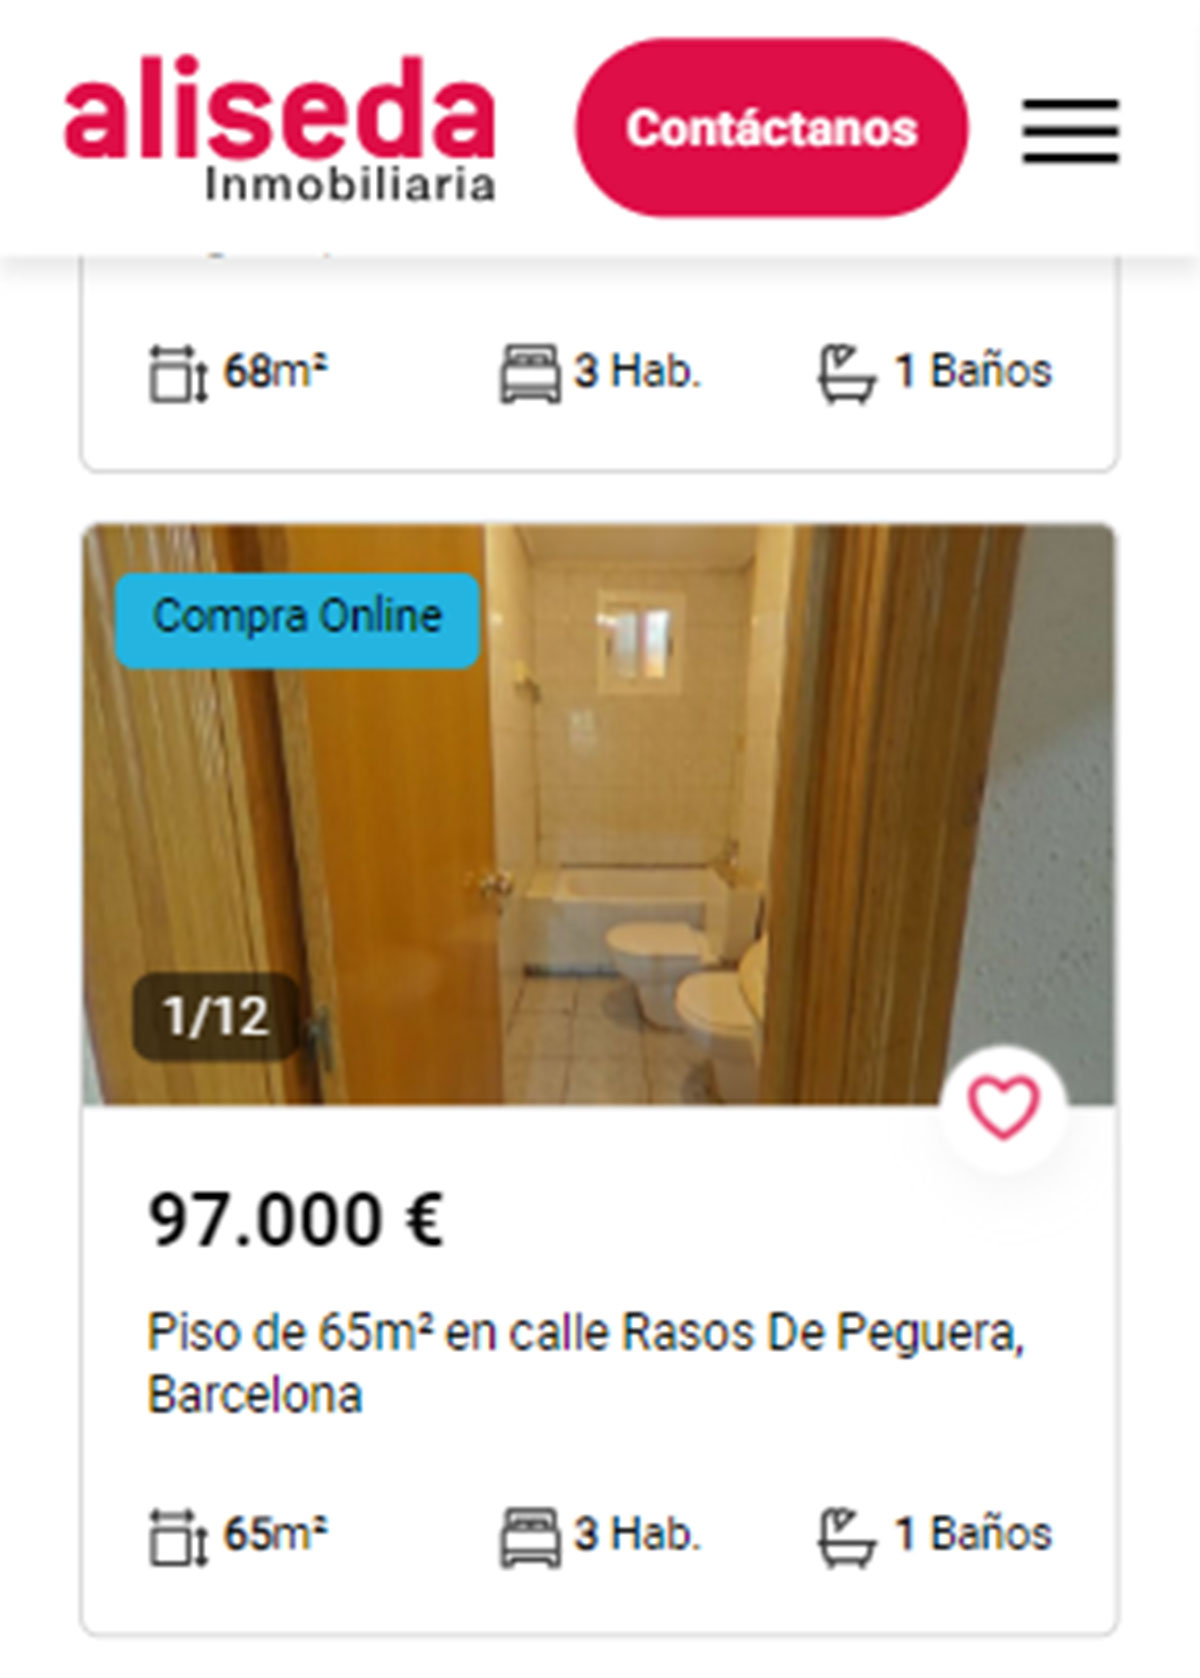 Piso en Barcelona por 97.000 euros